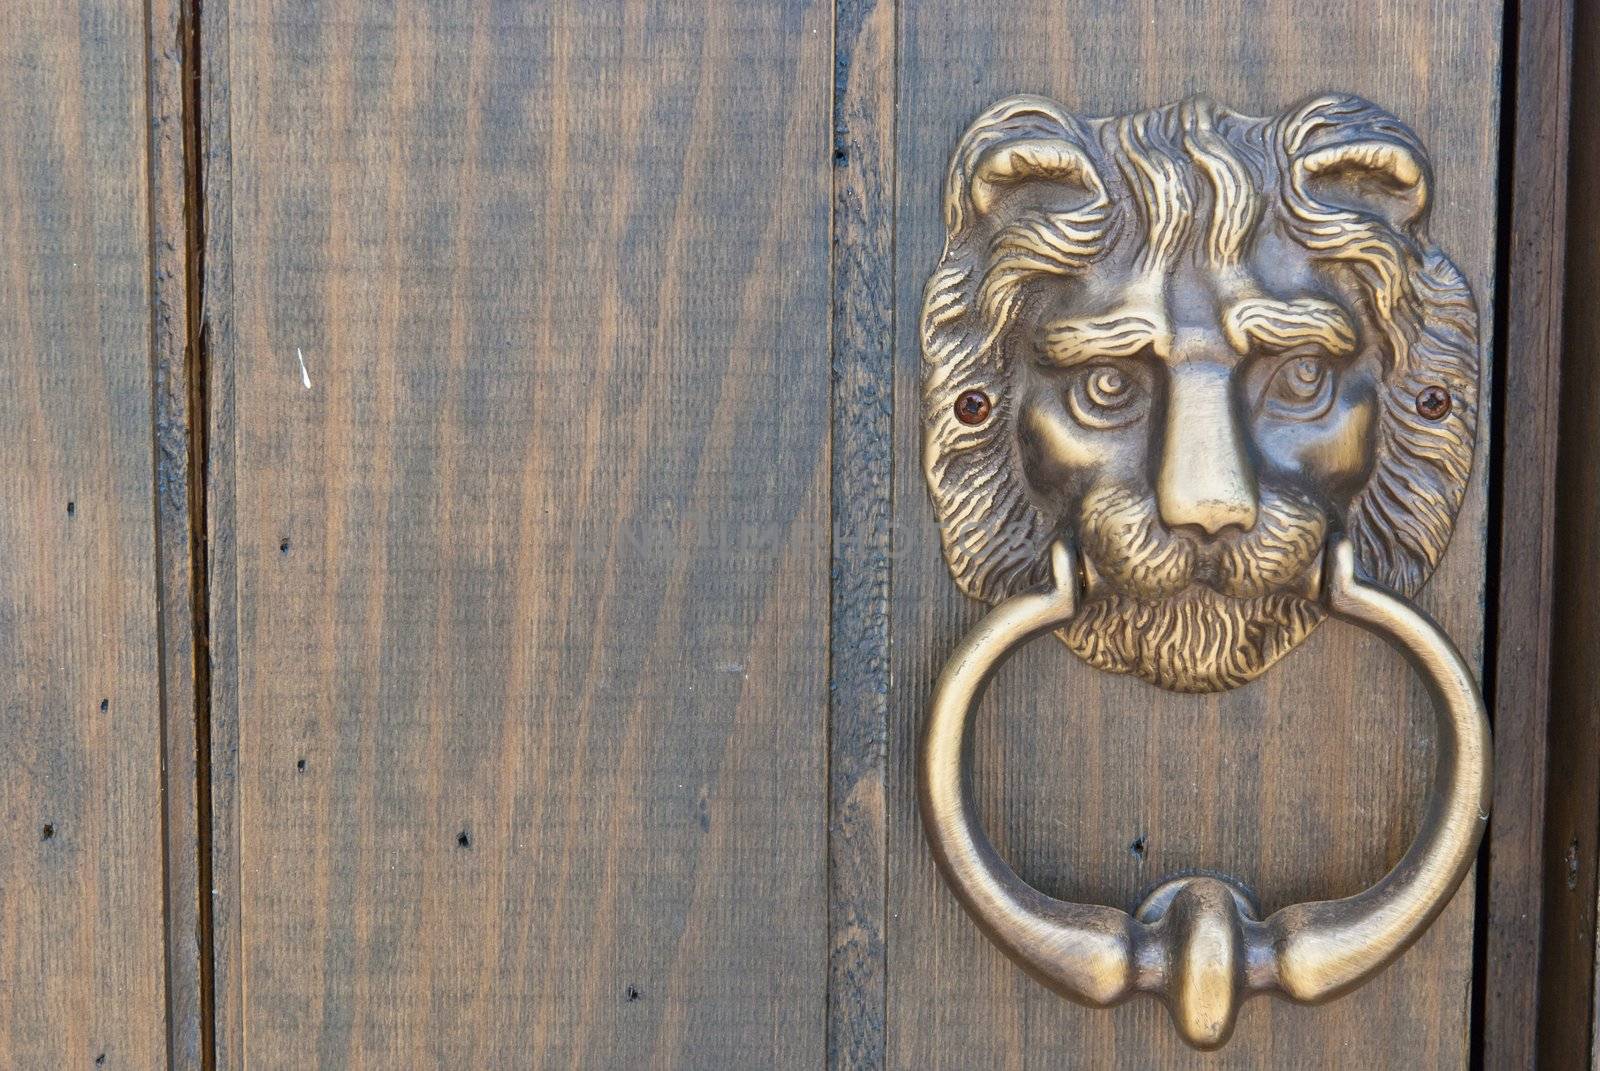 an old metal door handle knocker, on wooden door